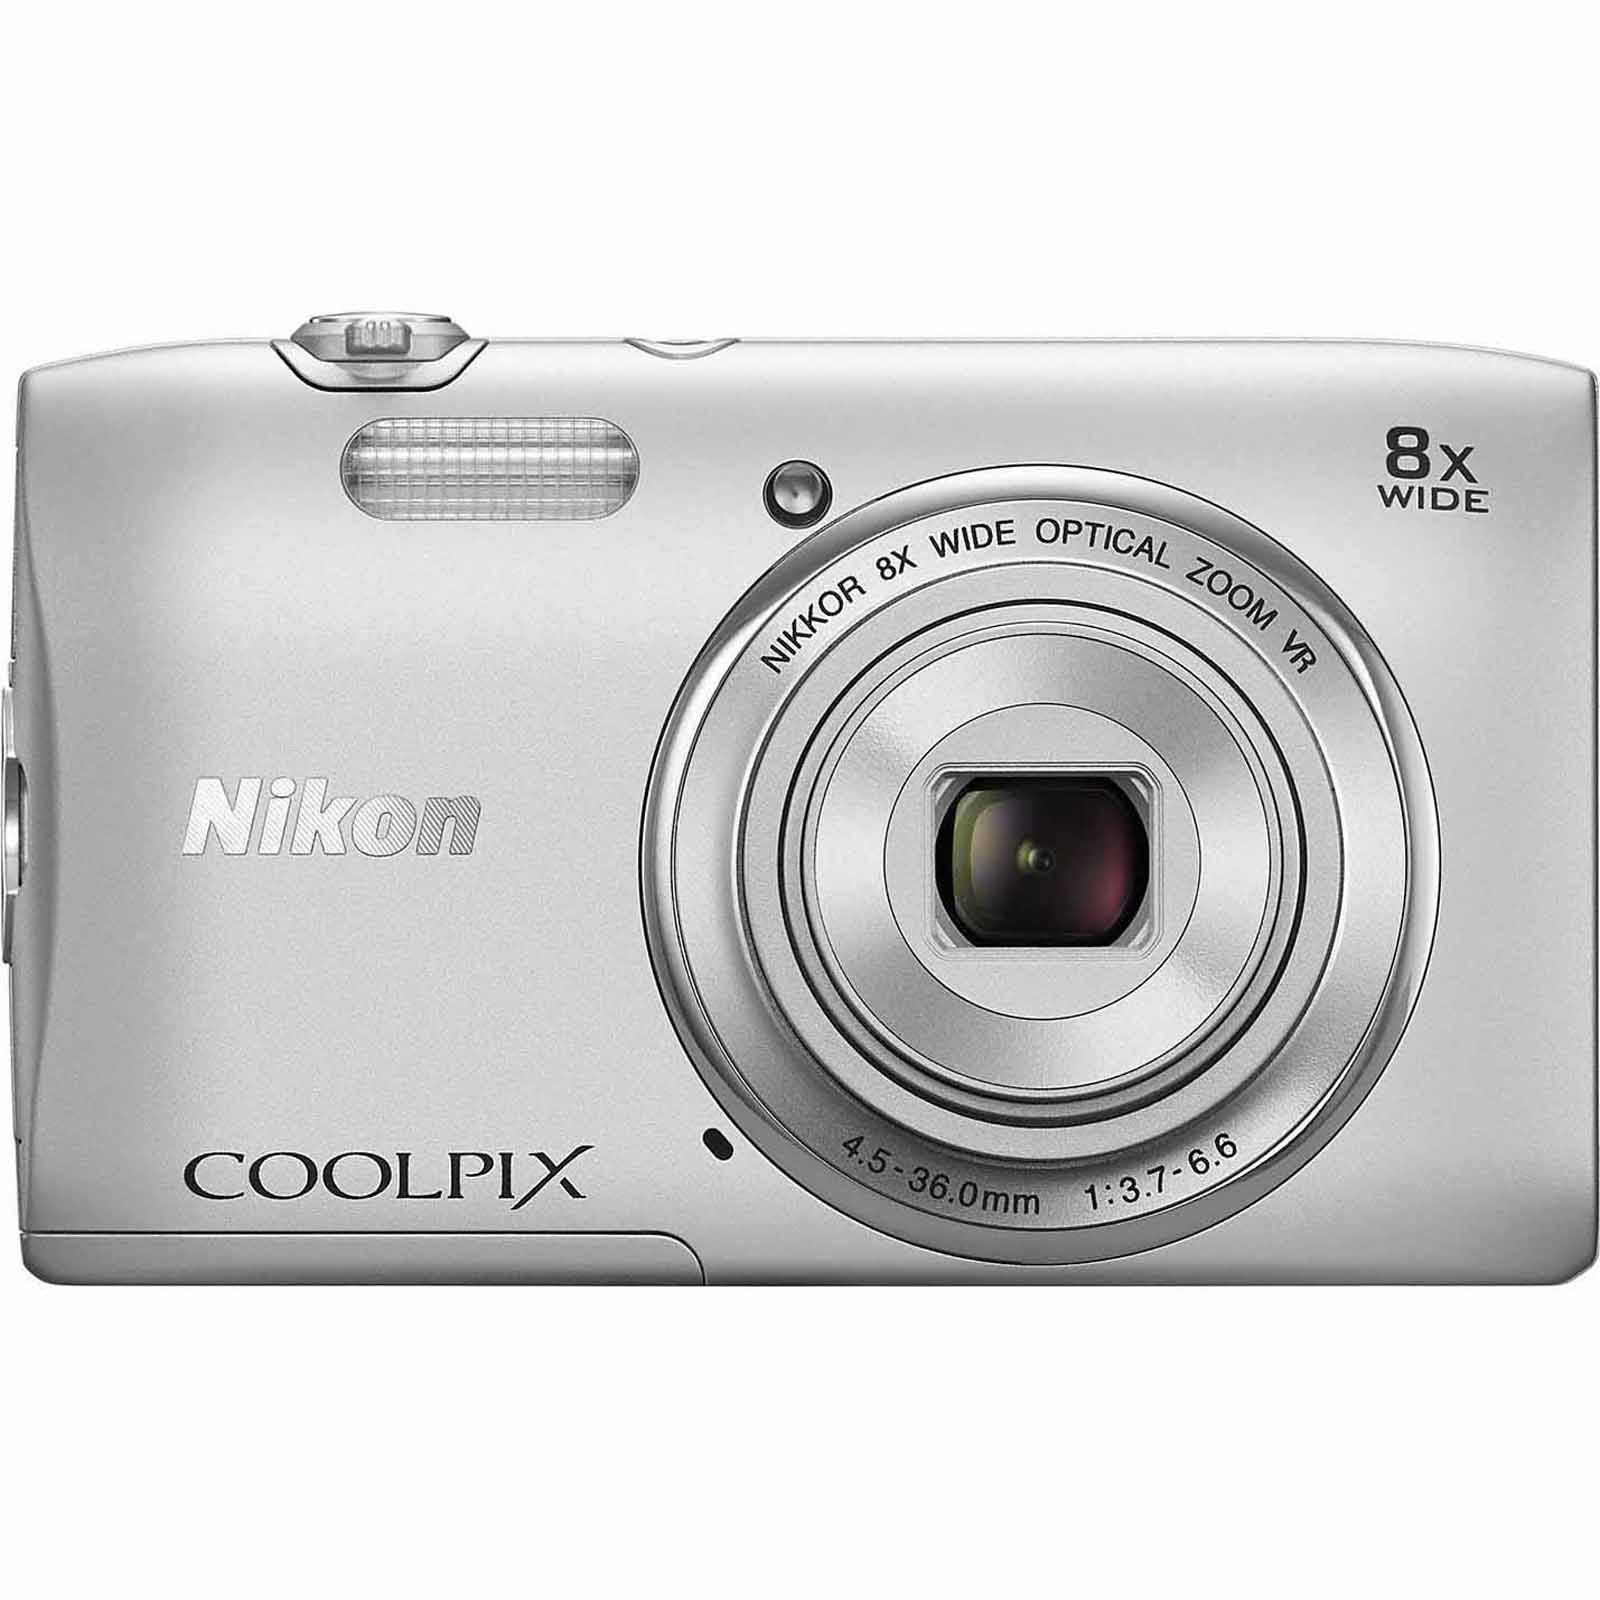 20.1-Megapixel COOLPIX Digital Camera - Silver